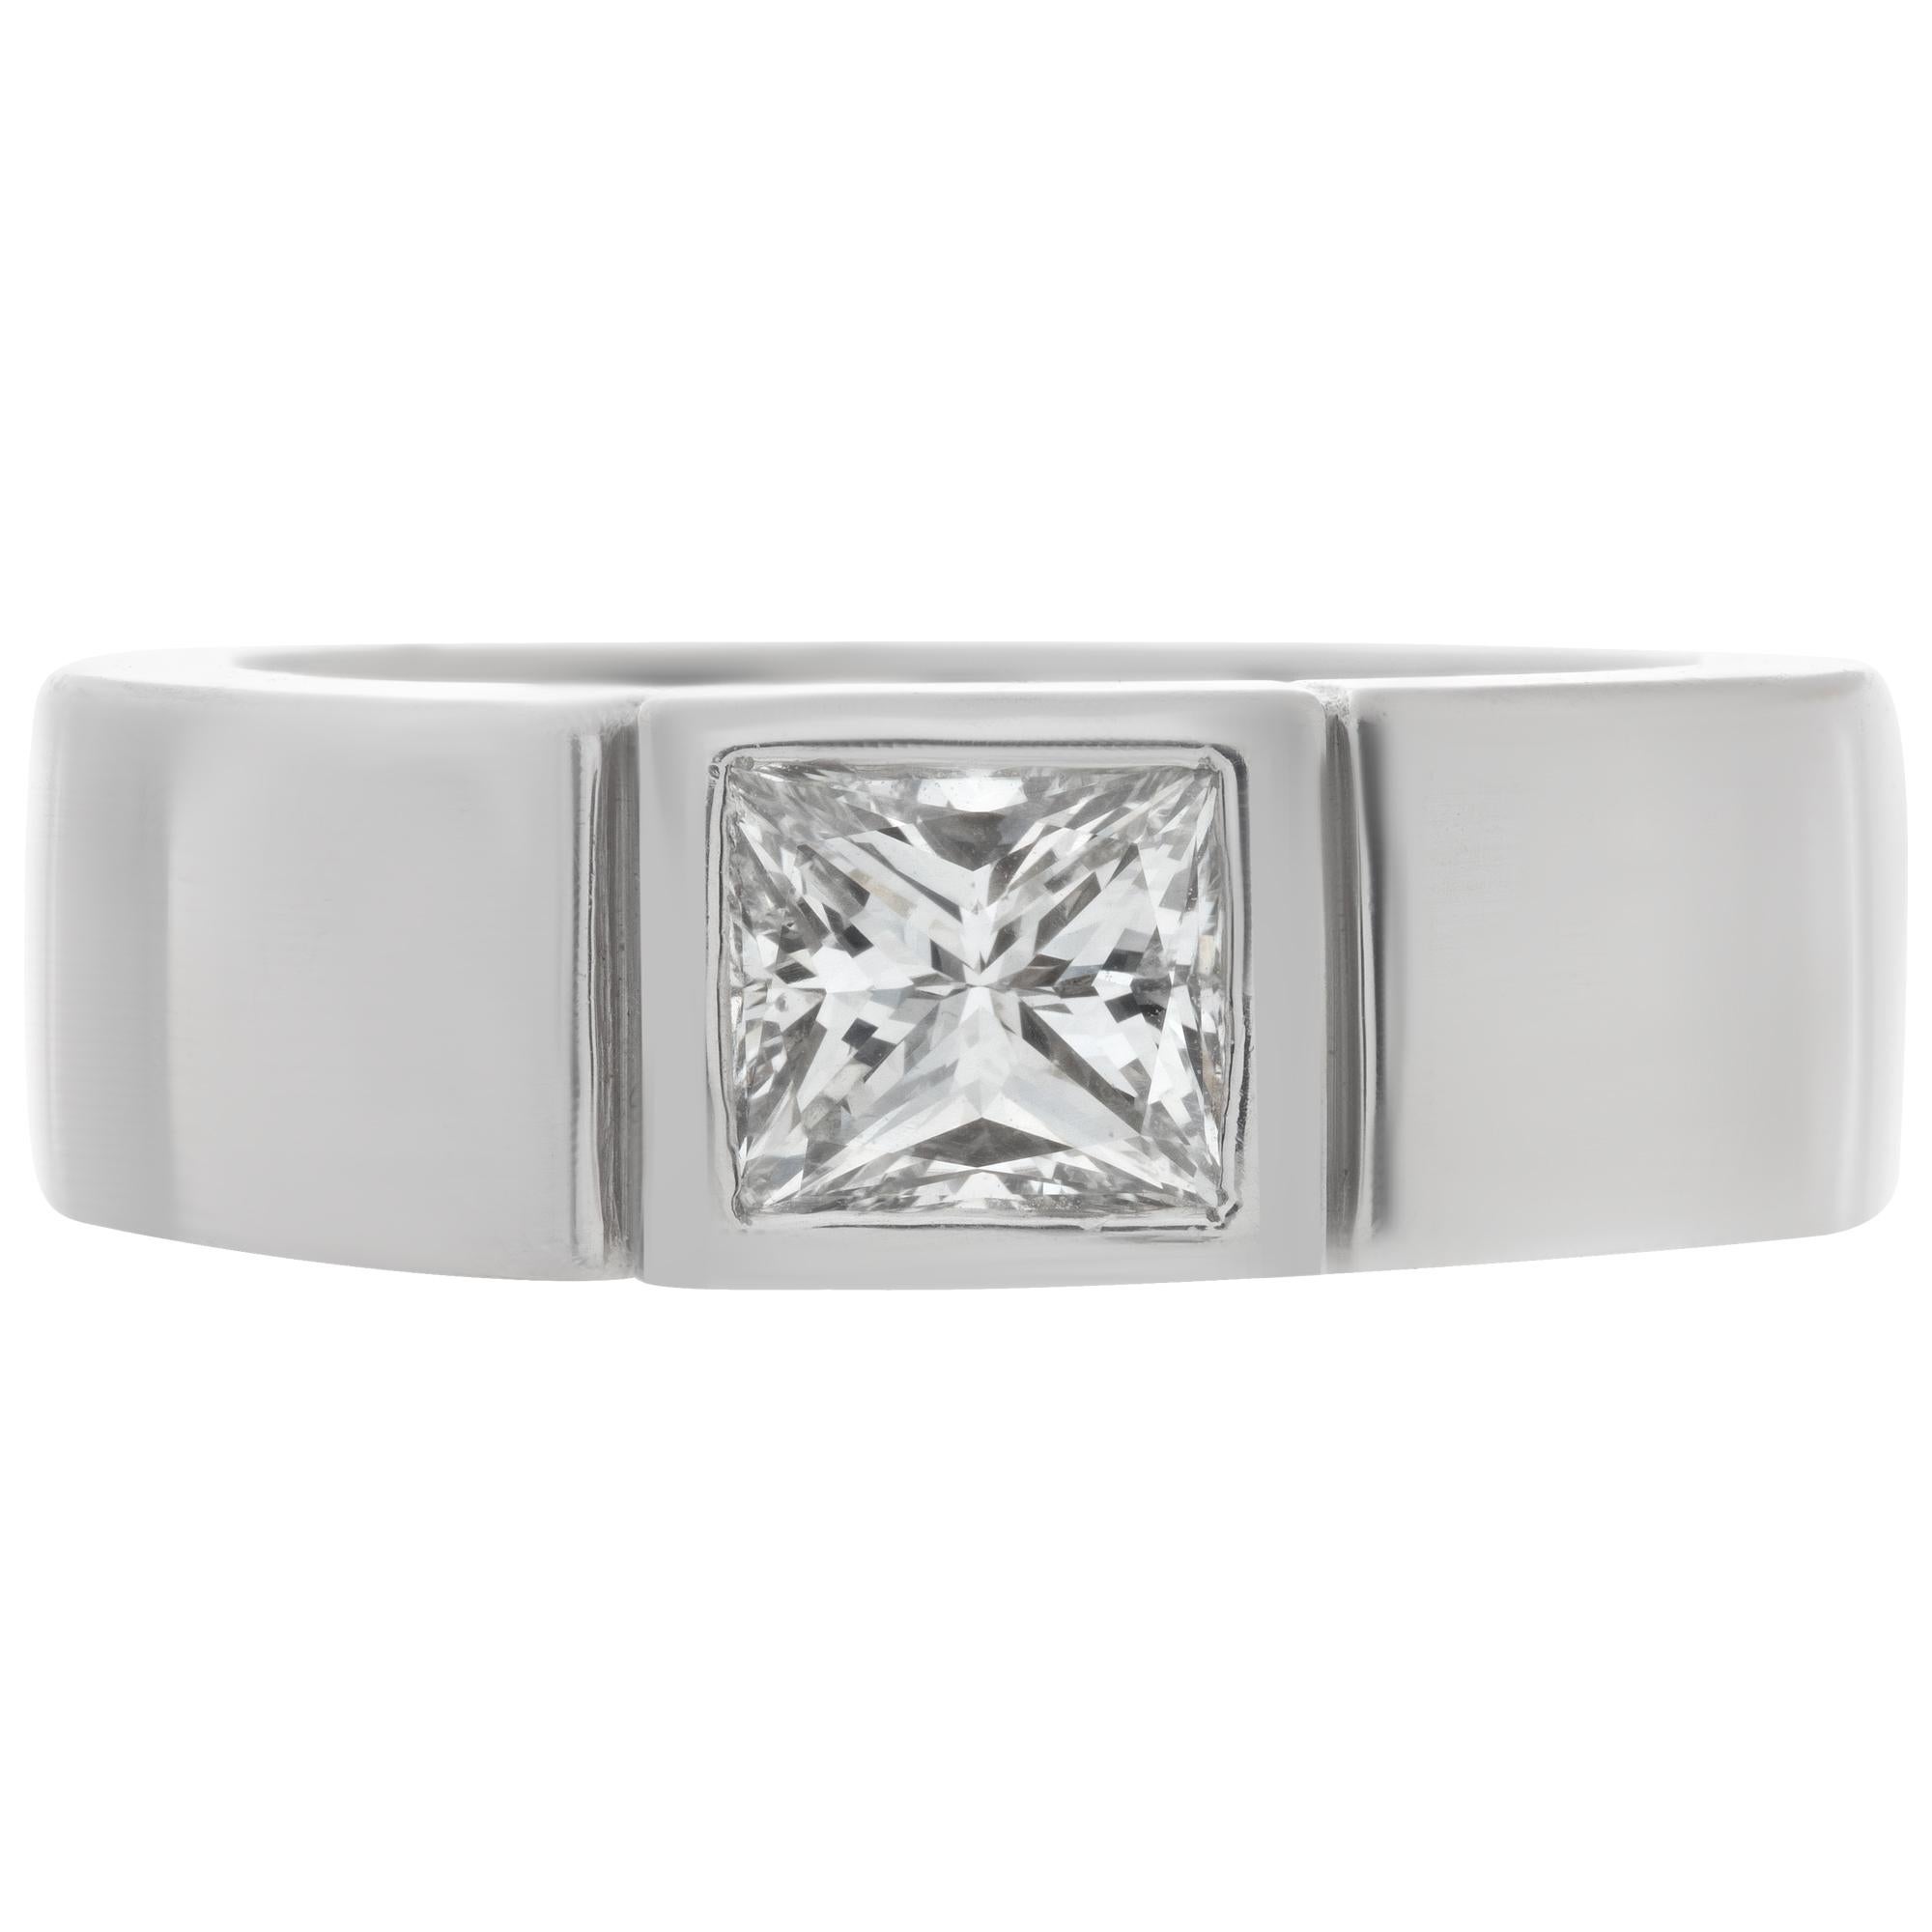 EGL-zertifizierter Princess-Cut-Diamant mit 1,03 Karat (Farbe H, Reinheit VS1) als Solitärring in schwerer Platinfassung. Größe 7

Dieser GIA-zertifizierte Ring hat derzeit die Größe 7. Einige Artikel können nach oben oder unten angepasst werden,